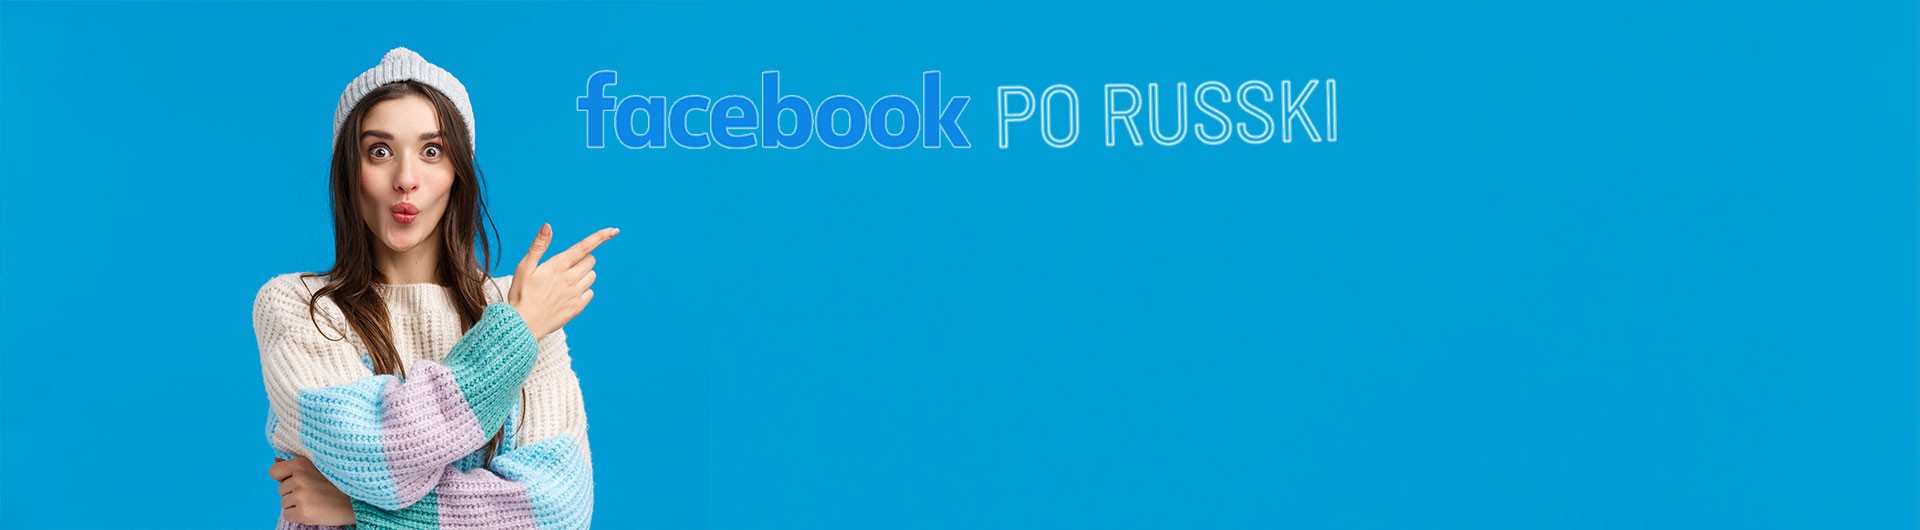 פרסום ברוסית בפייסבוק